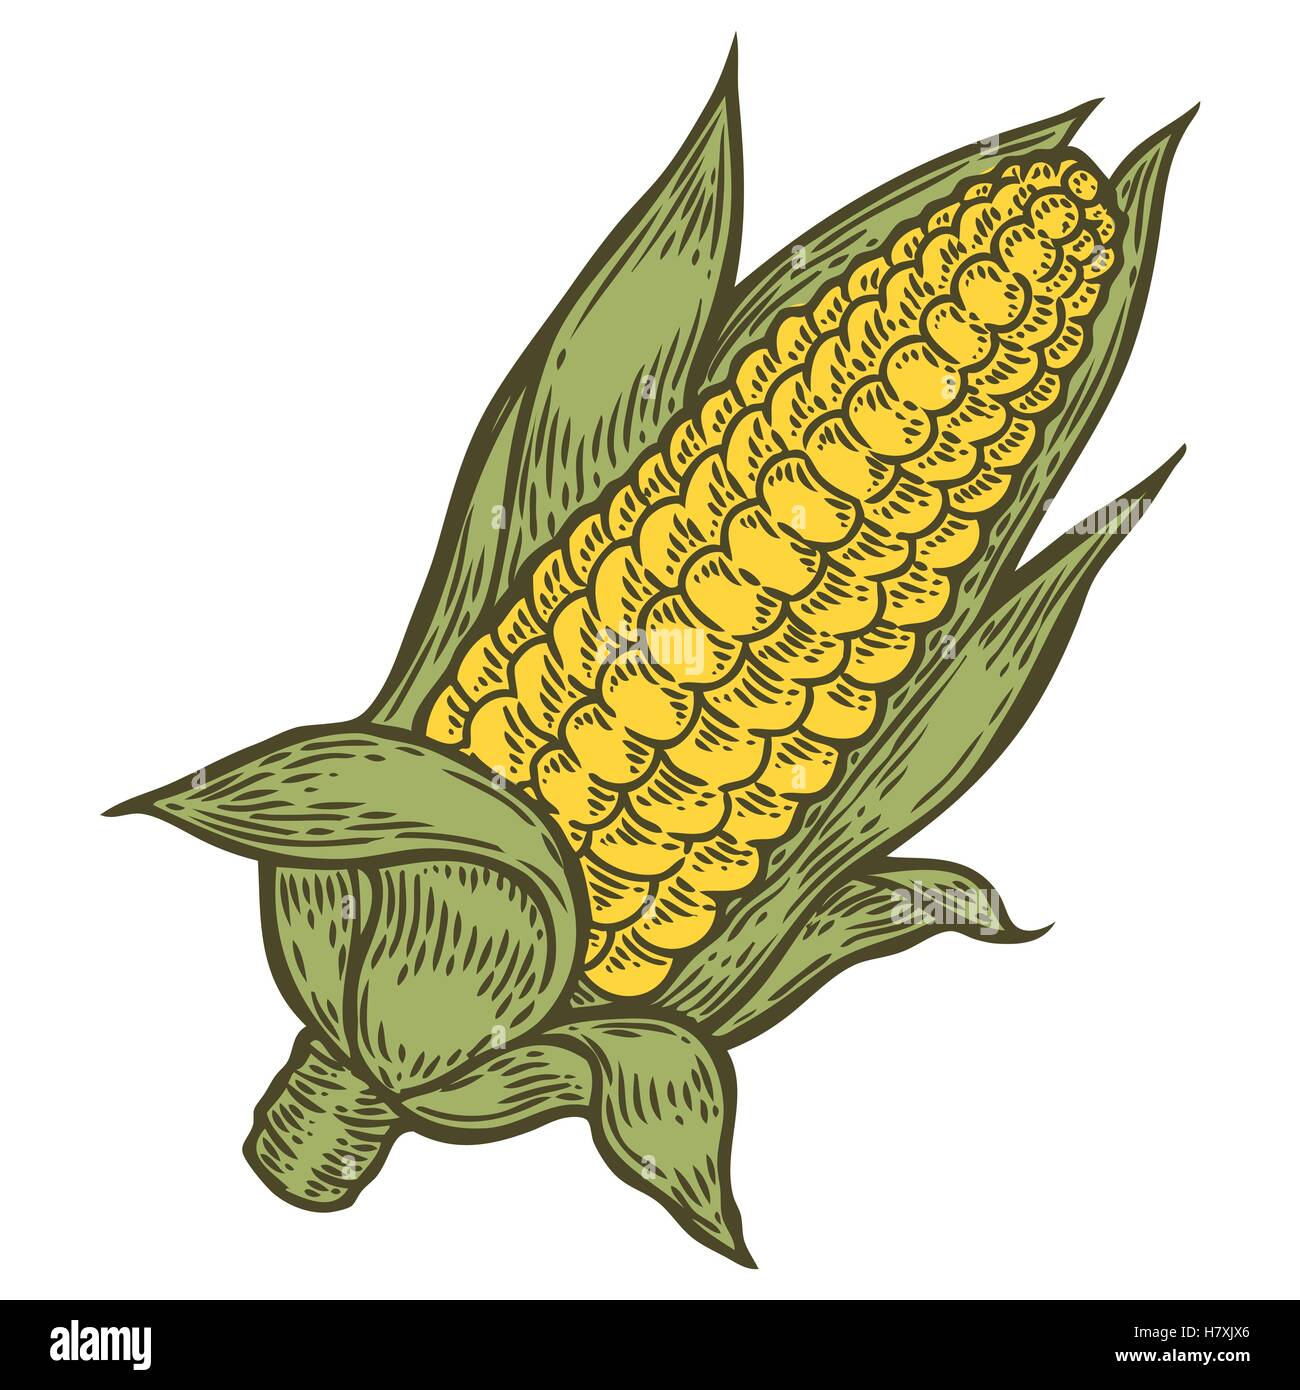 Le Maïs Le maïs a vecteur. Isolé sur fond blanc. Le maïs de l'ingrédient alimentaire. Illustration gravée à la main en rétro vintage sty Illustration de Vecteur